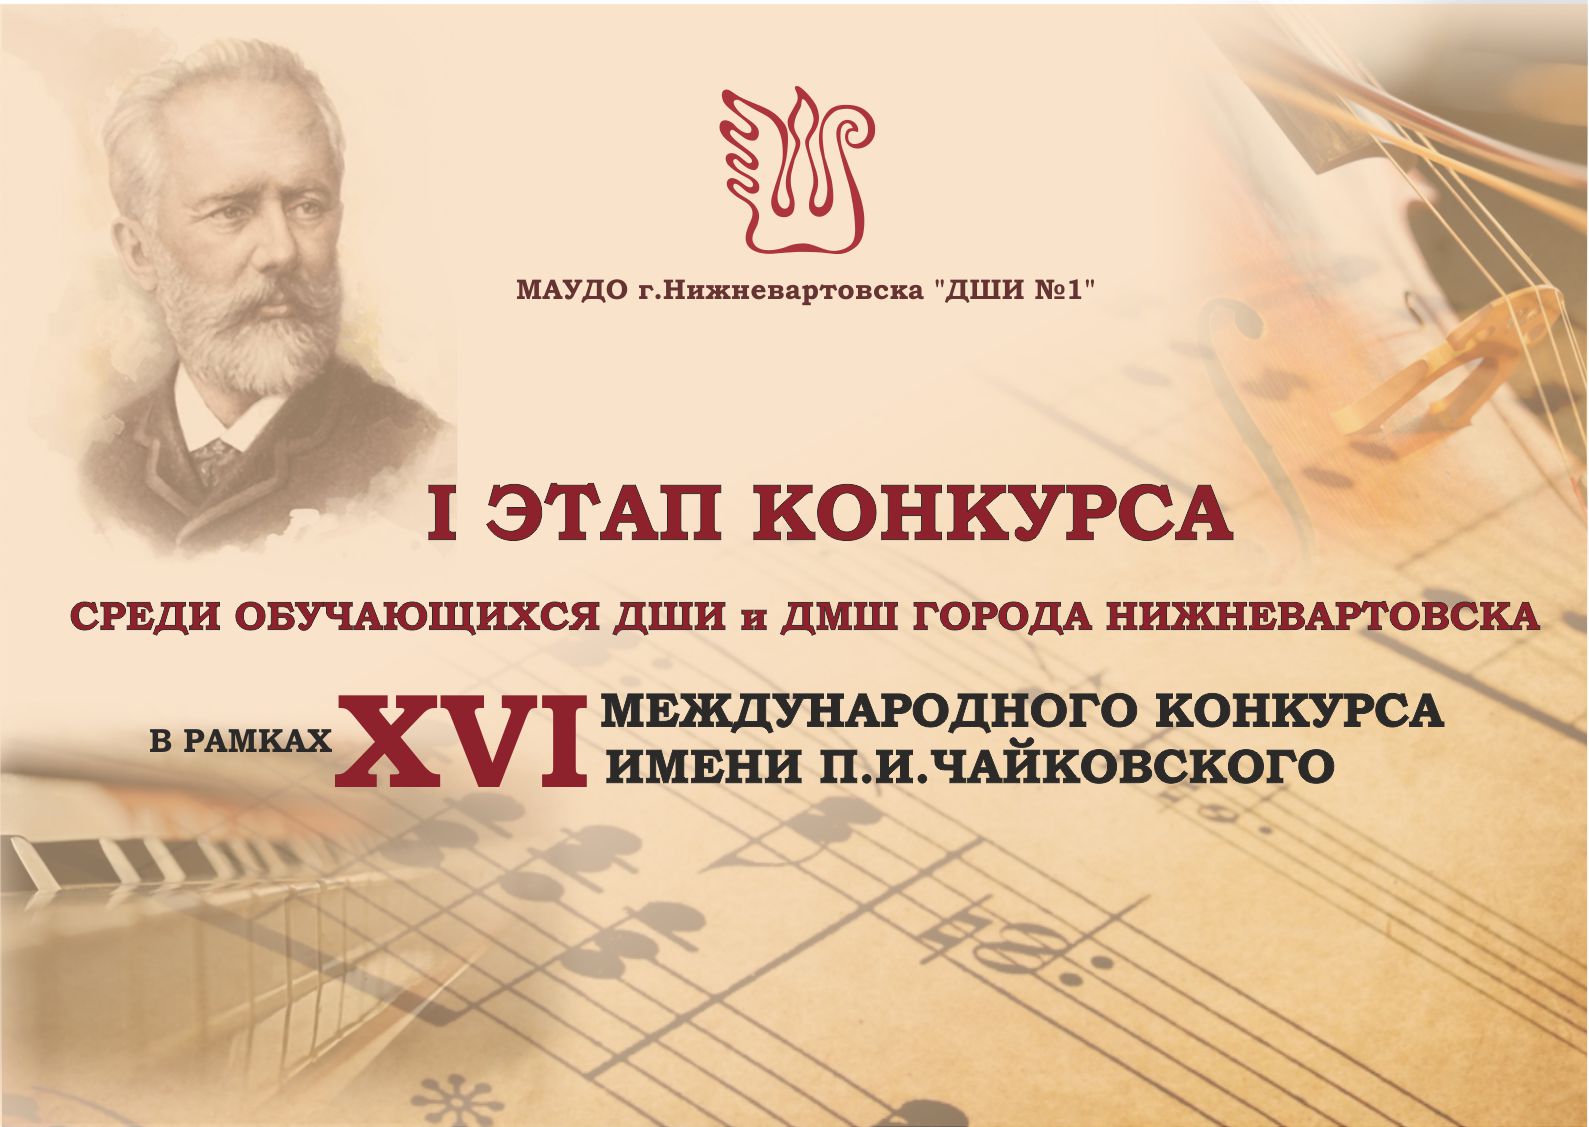 Первый этап конкурса в рамках XVI Международного конкурса имени П.И.Чайковского